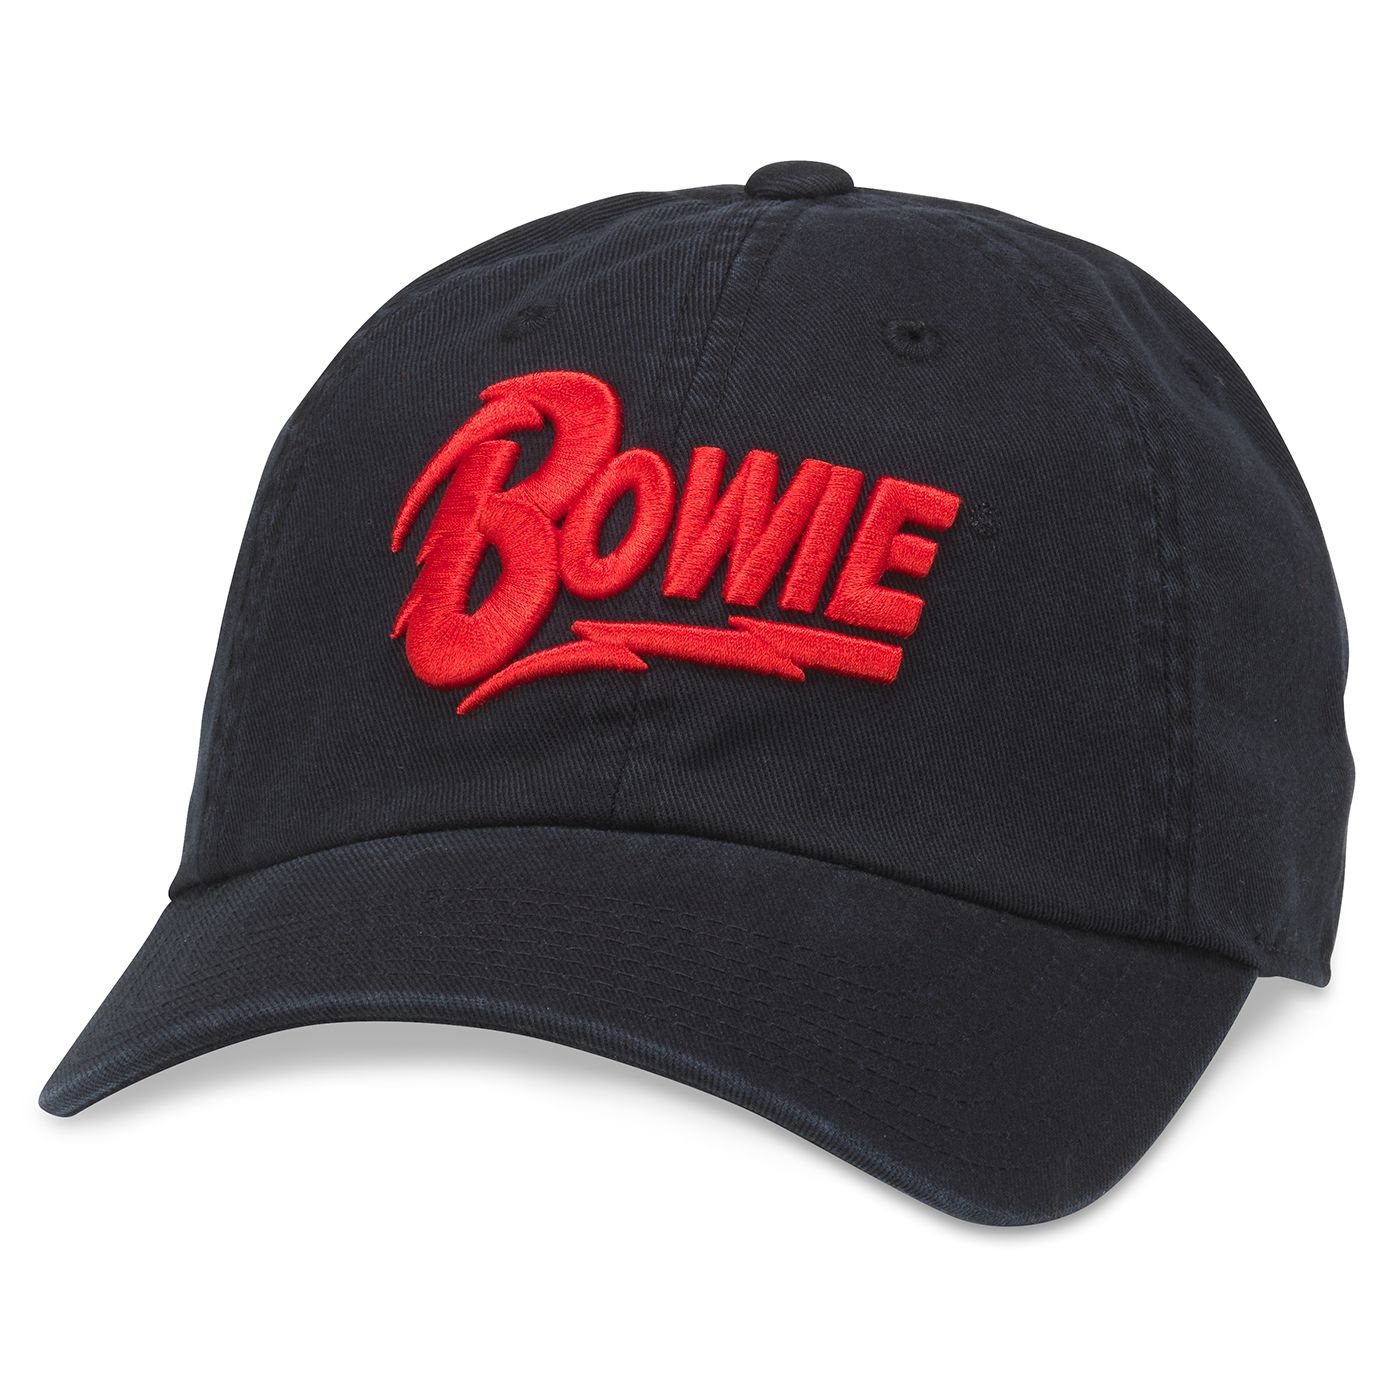 BOWIE Ballpark Black / Red Hat